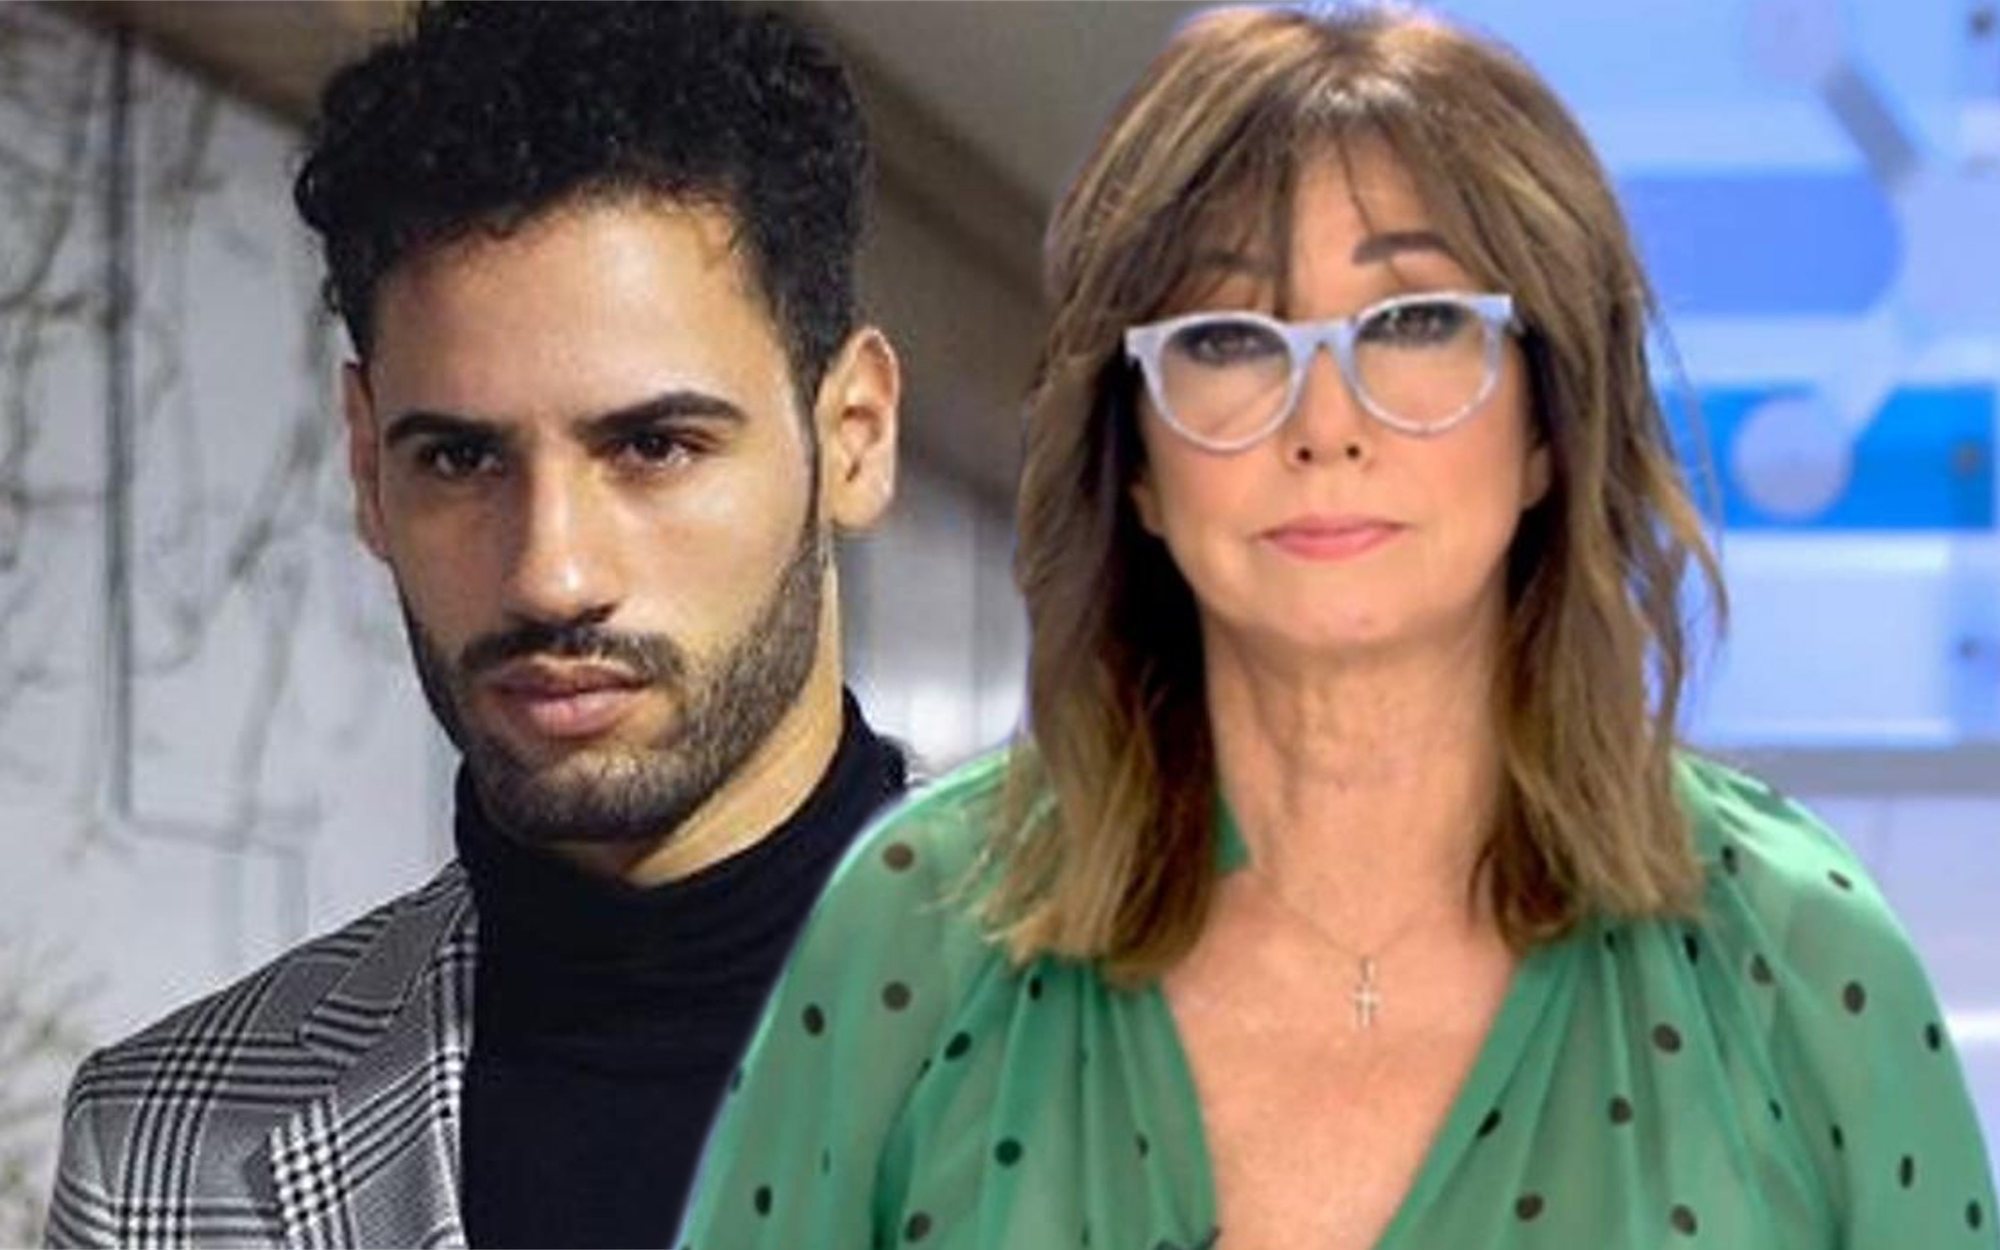 Asraf Beno acusa a Ana Rosa Quintana de haberle vetado en televisión: "No le gusta que le contesten"